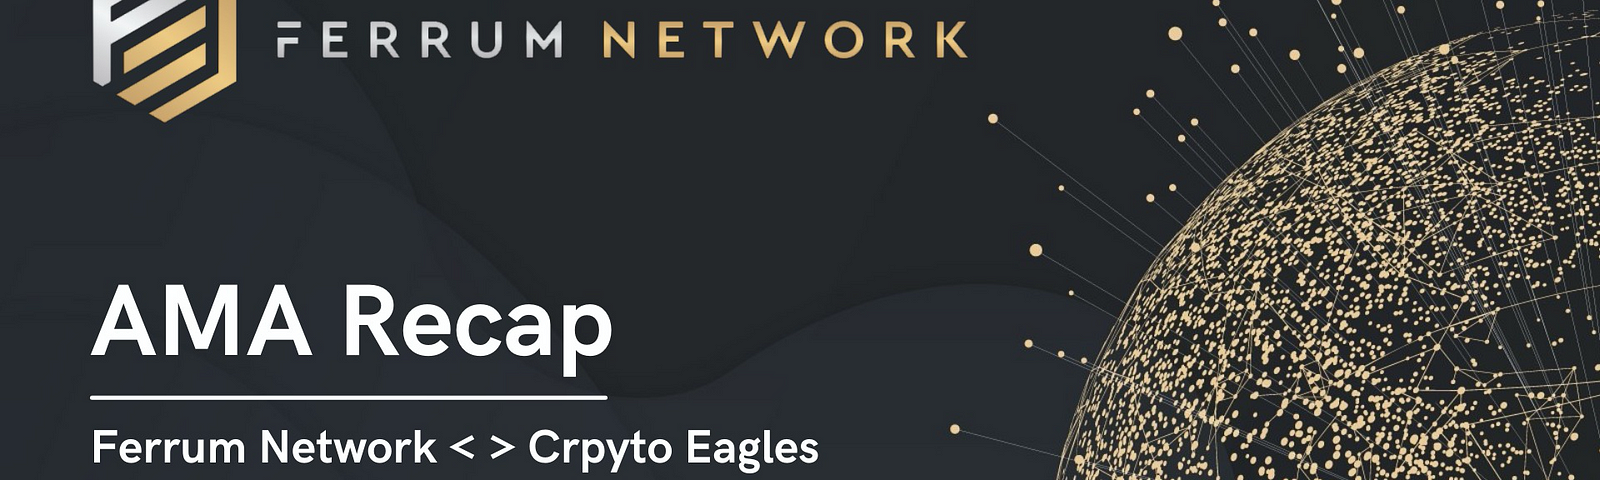 Ferrum Network <> Crypto Eagles AMA Recap